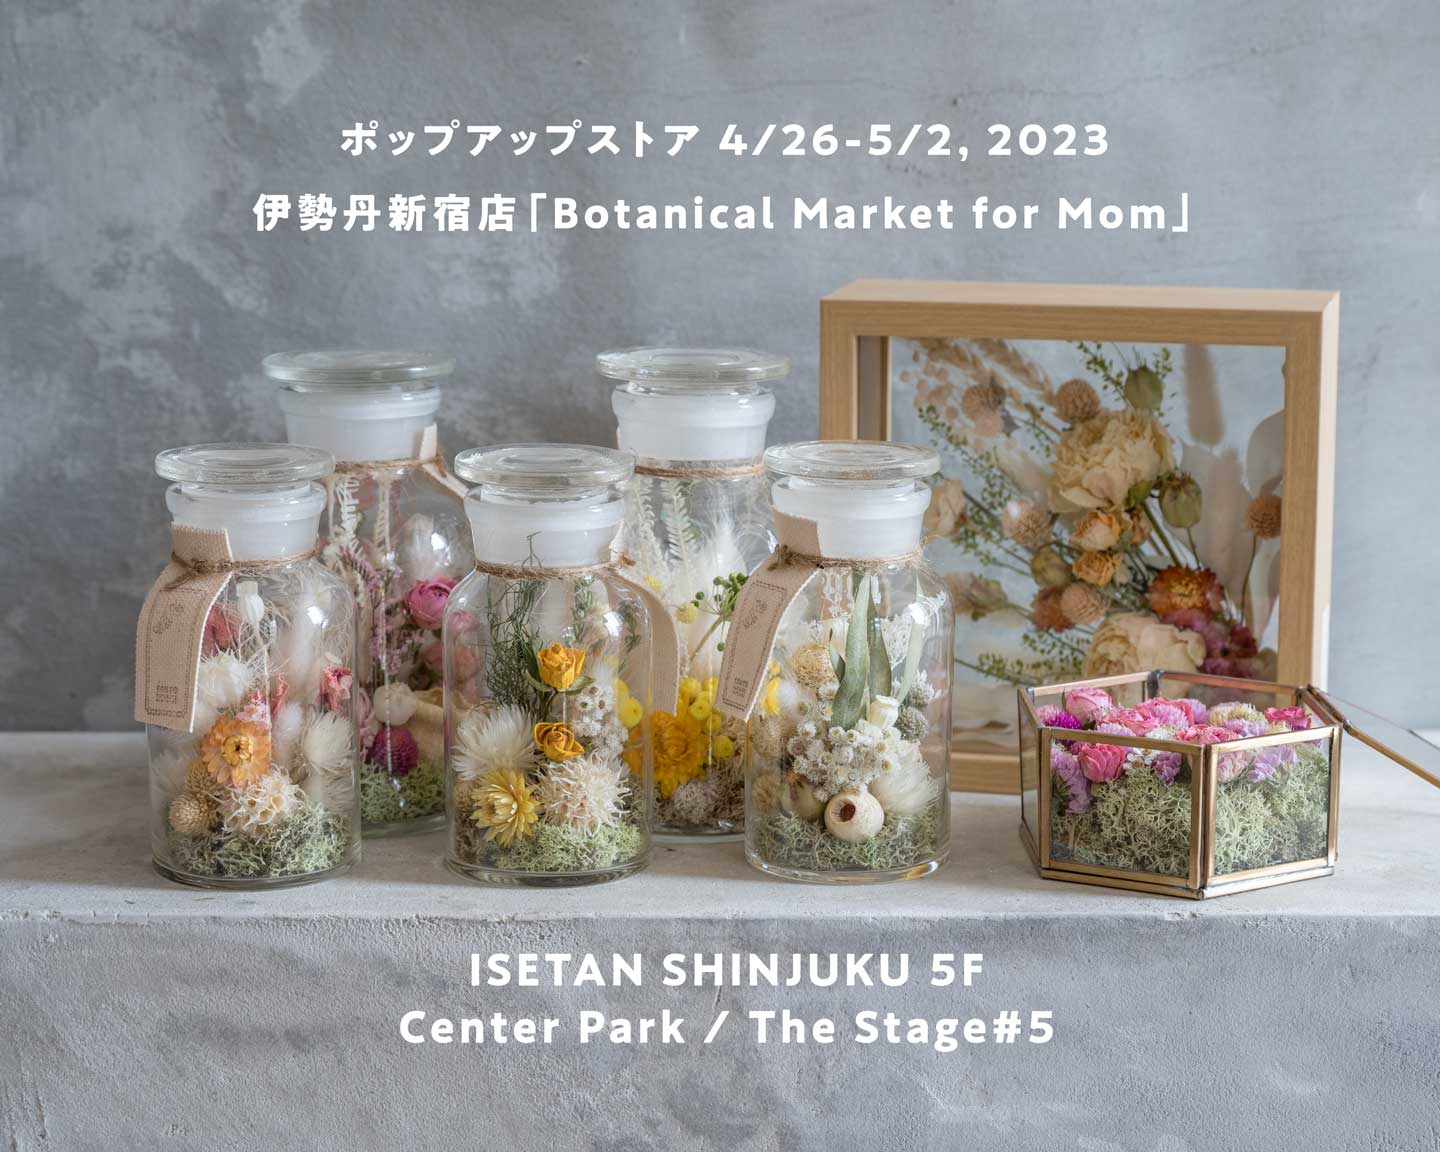 伊勢丹新宿店本館5階「Botanical Market for Mom」ポップアップストア出展 4/26-5/2, 2023